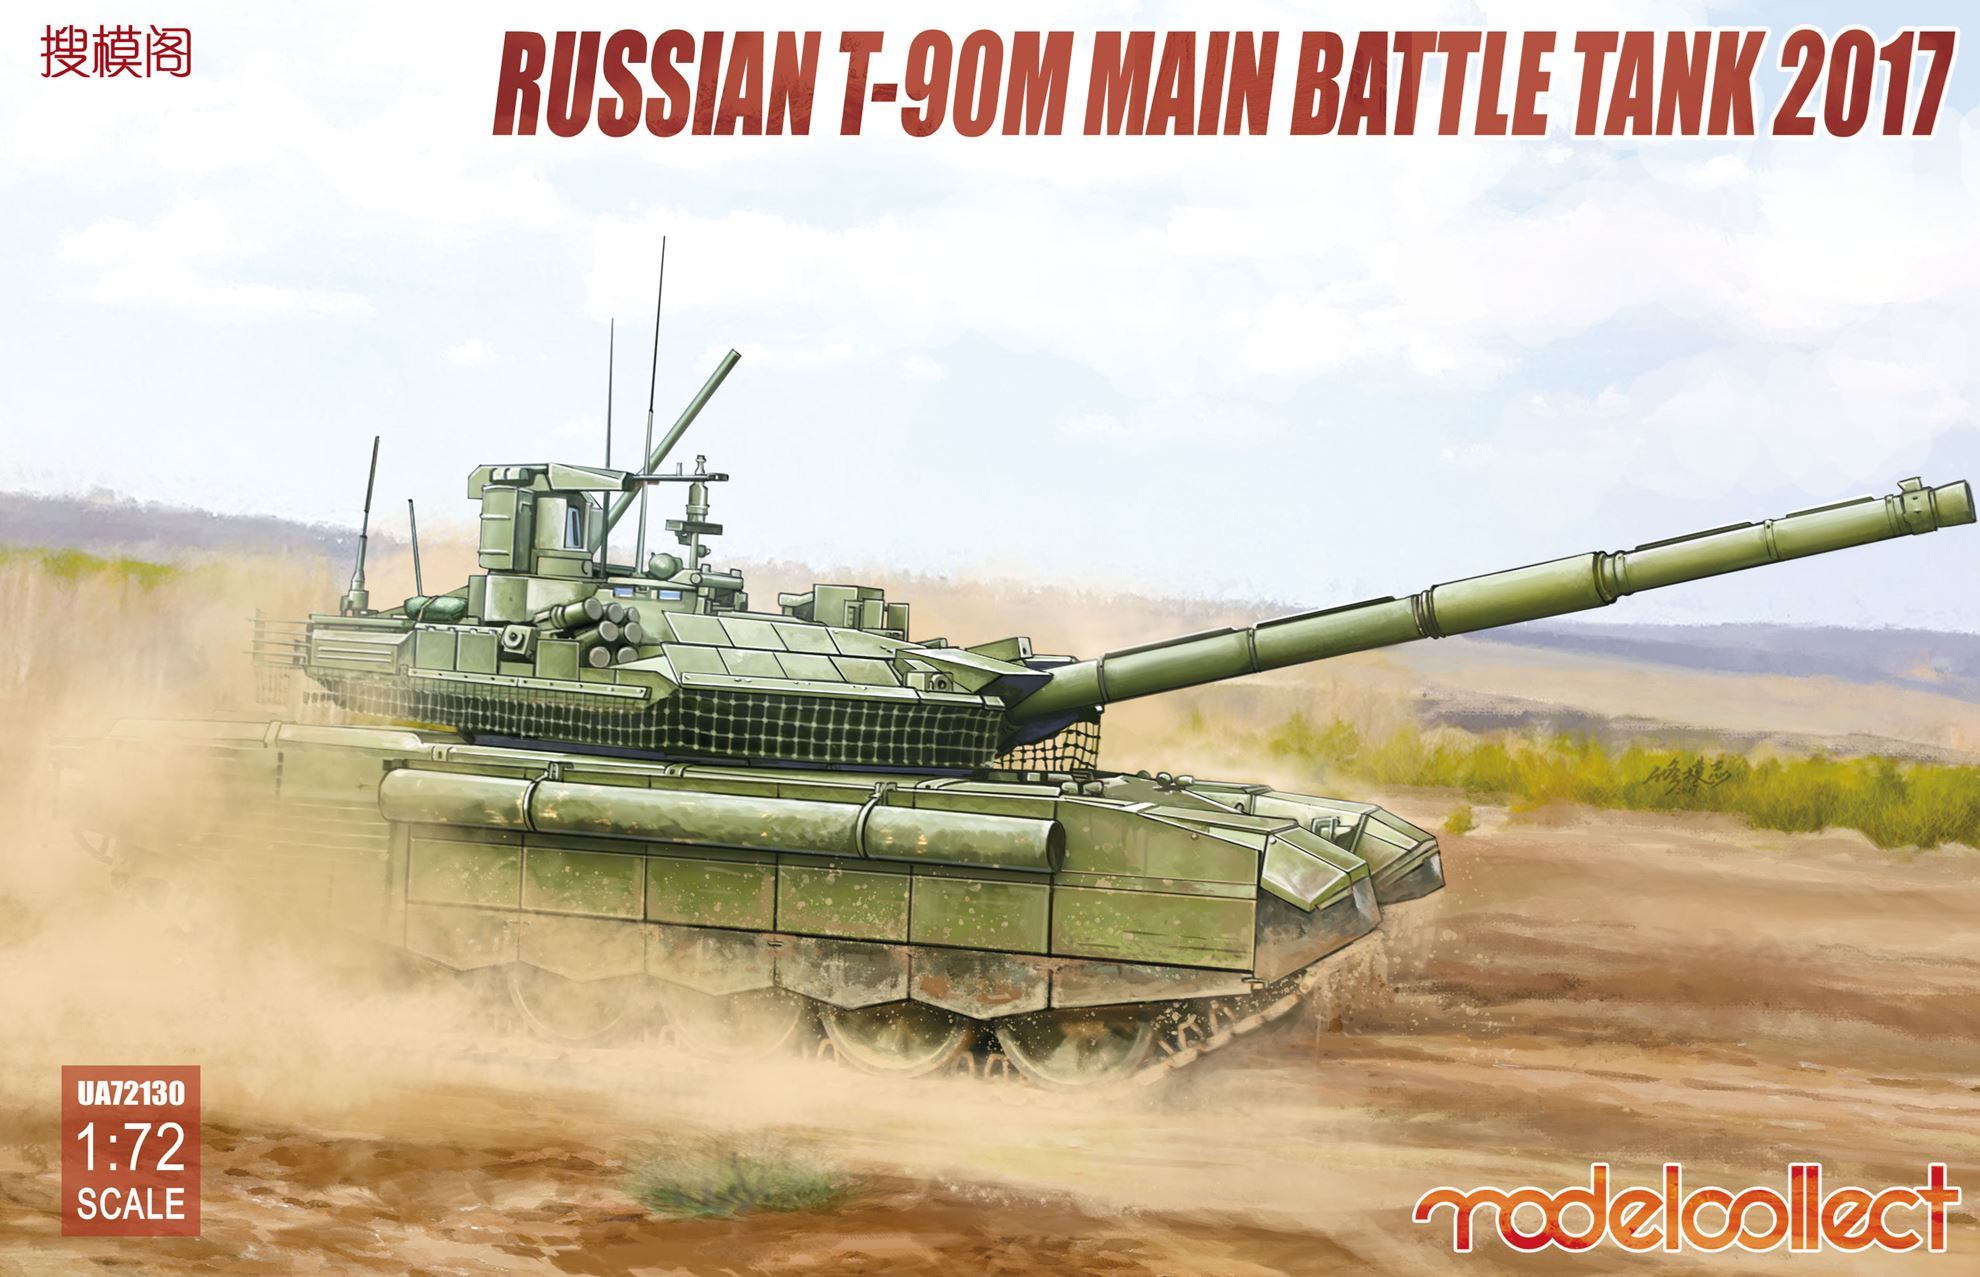 Russian T-90M Main Battle Tank 2017